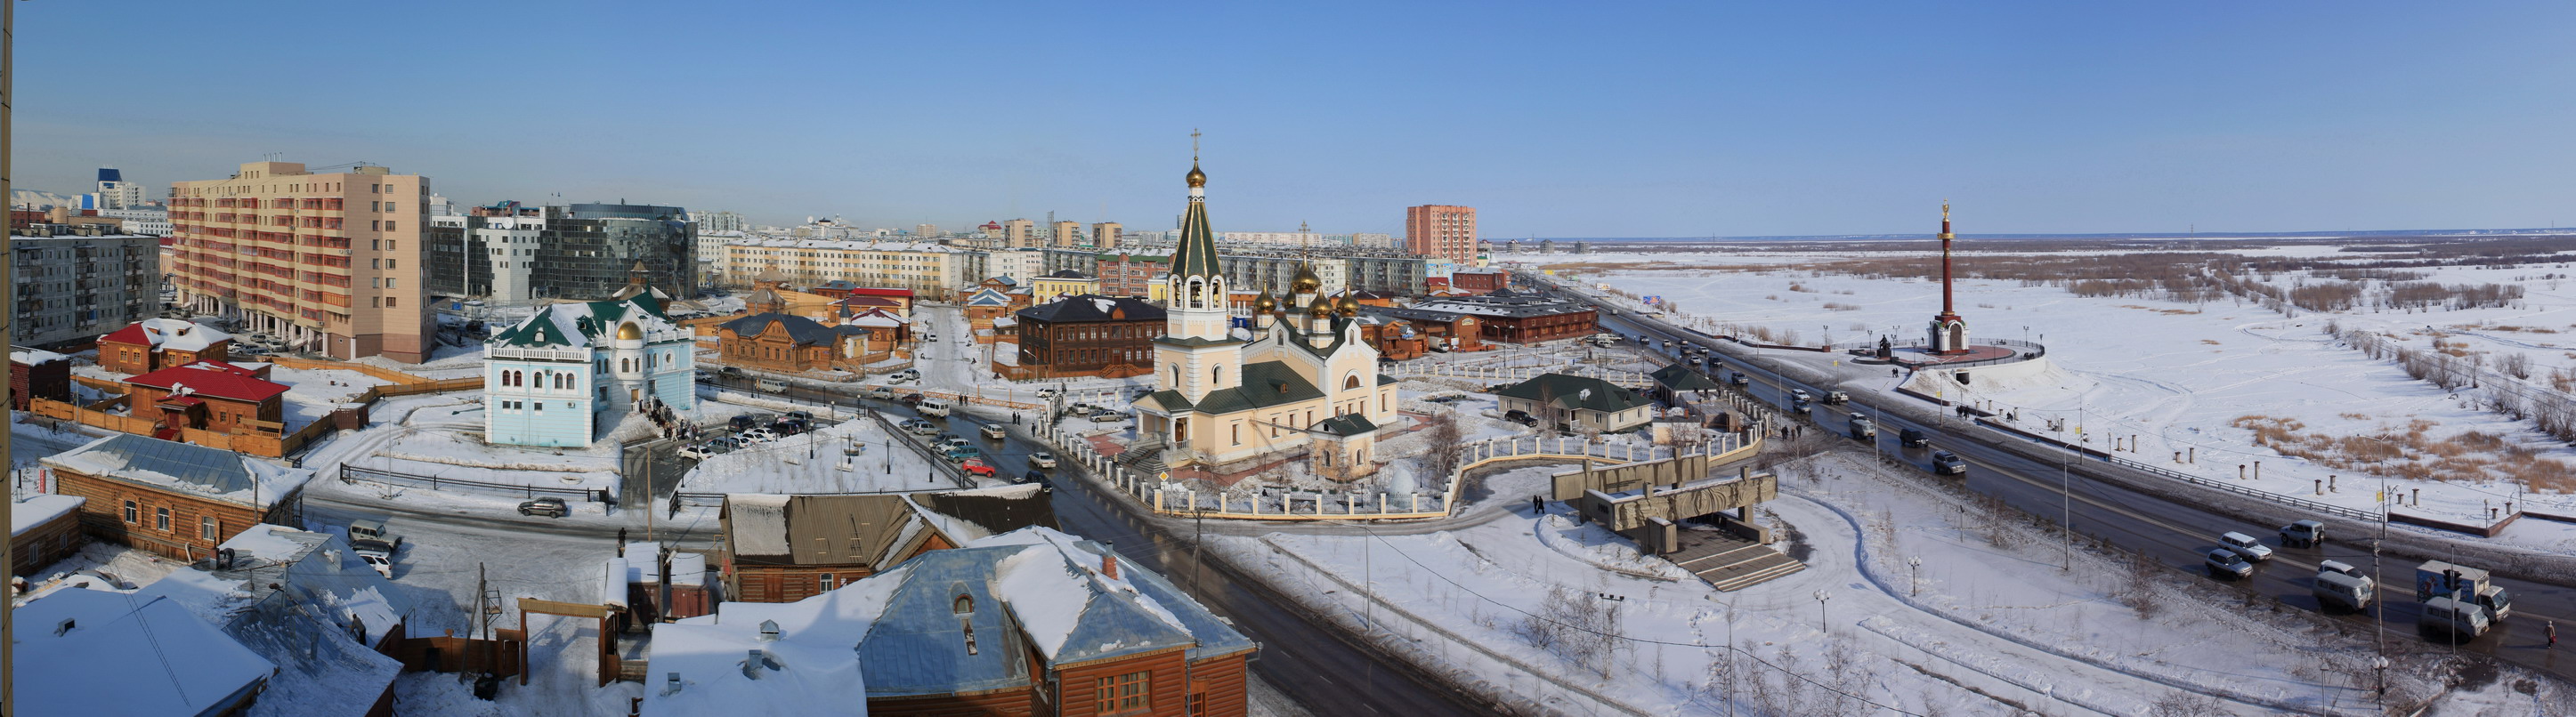 Якутск панорама города